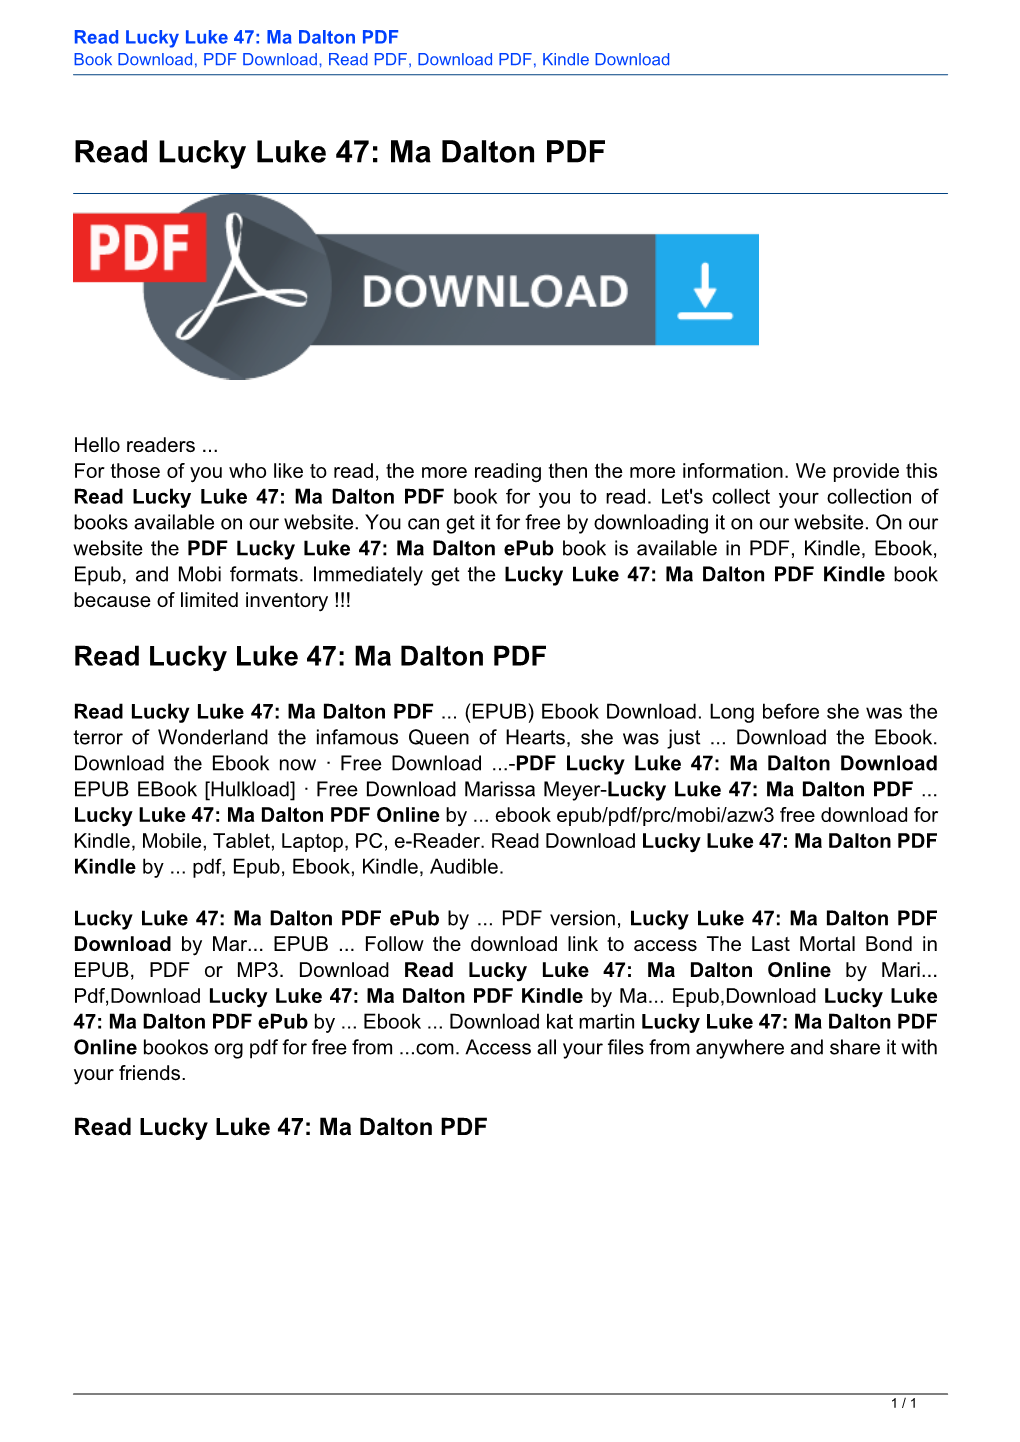 Read Lucky Luke 47: Ma Dalton PDF Book Download, PDF Download, Read PDF, Download PDF, Kindle Download